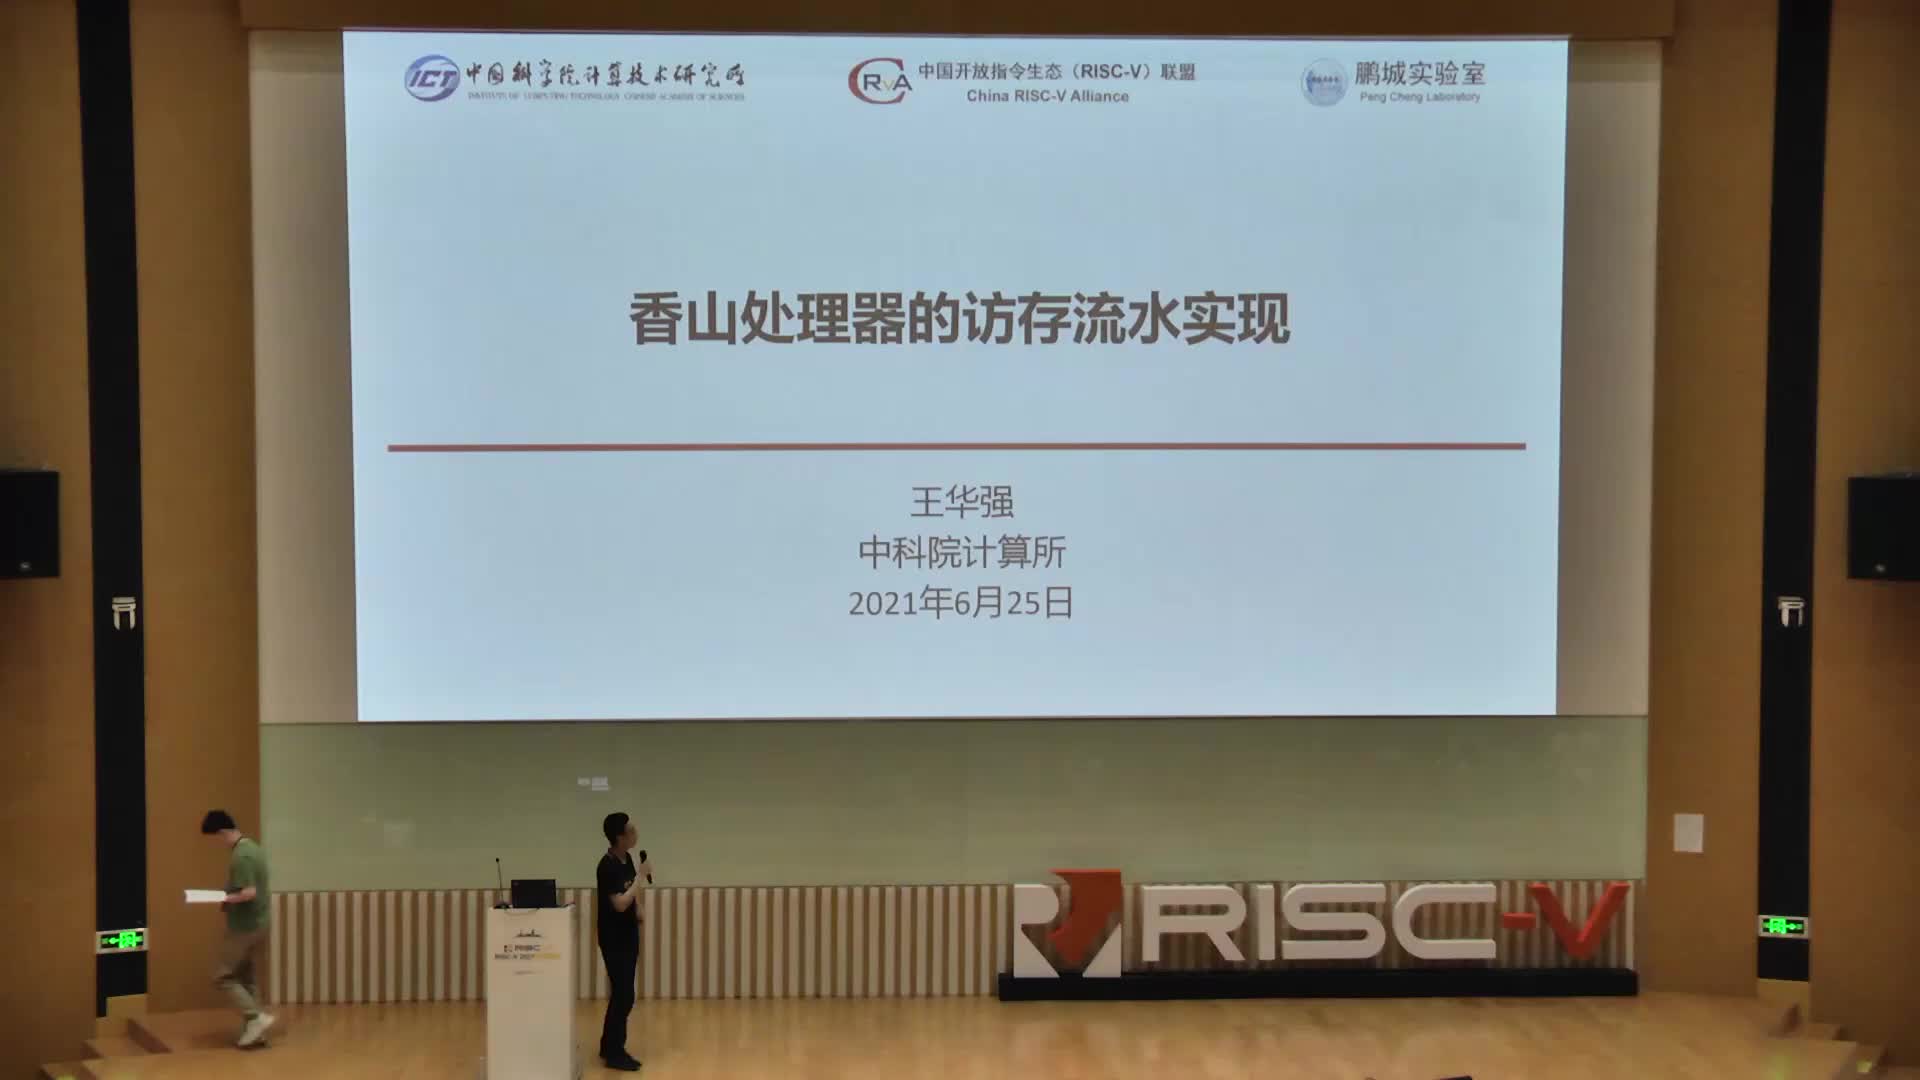 王华强 - 香山处理器访存流水线的设计与实现 - 第一届 RISC-V 中国峰会_batch